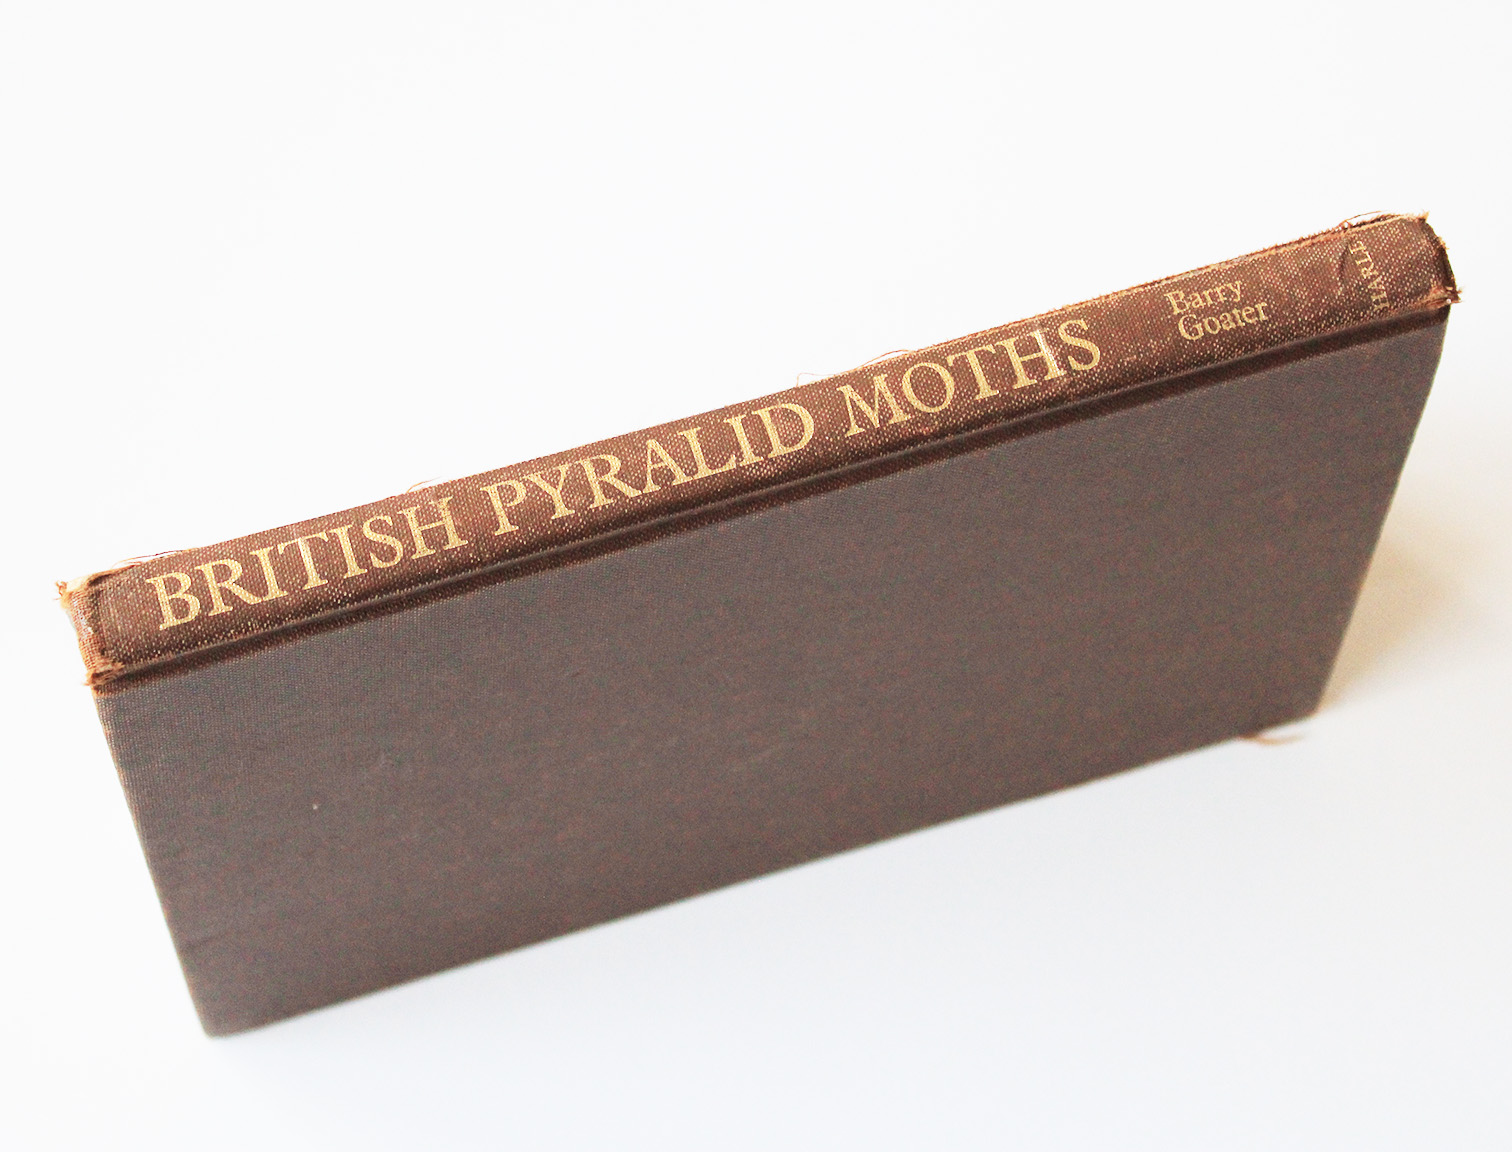 britsh pyralid moths